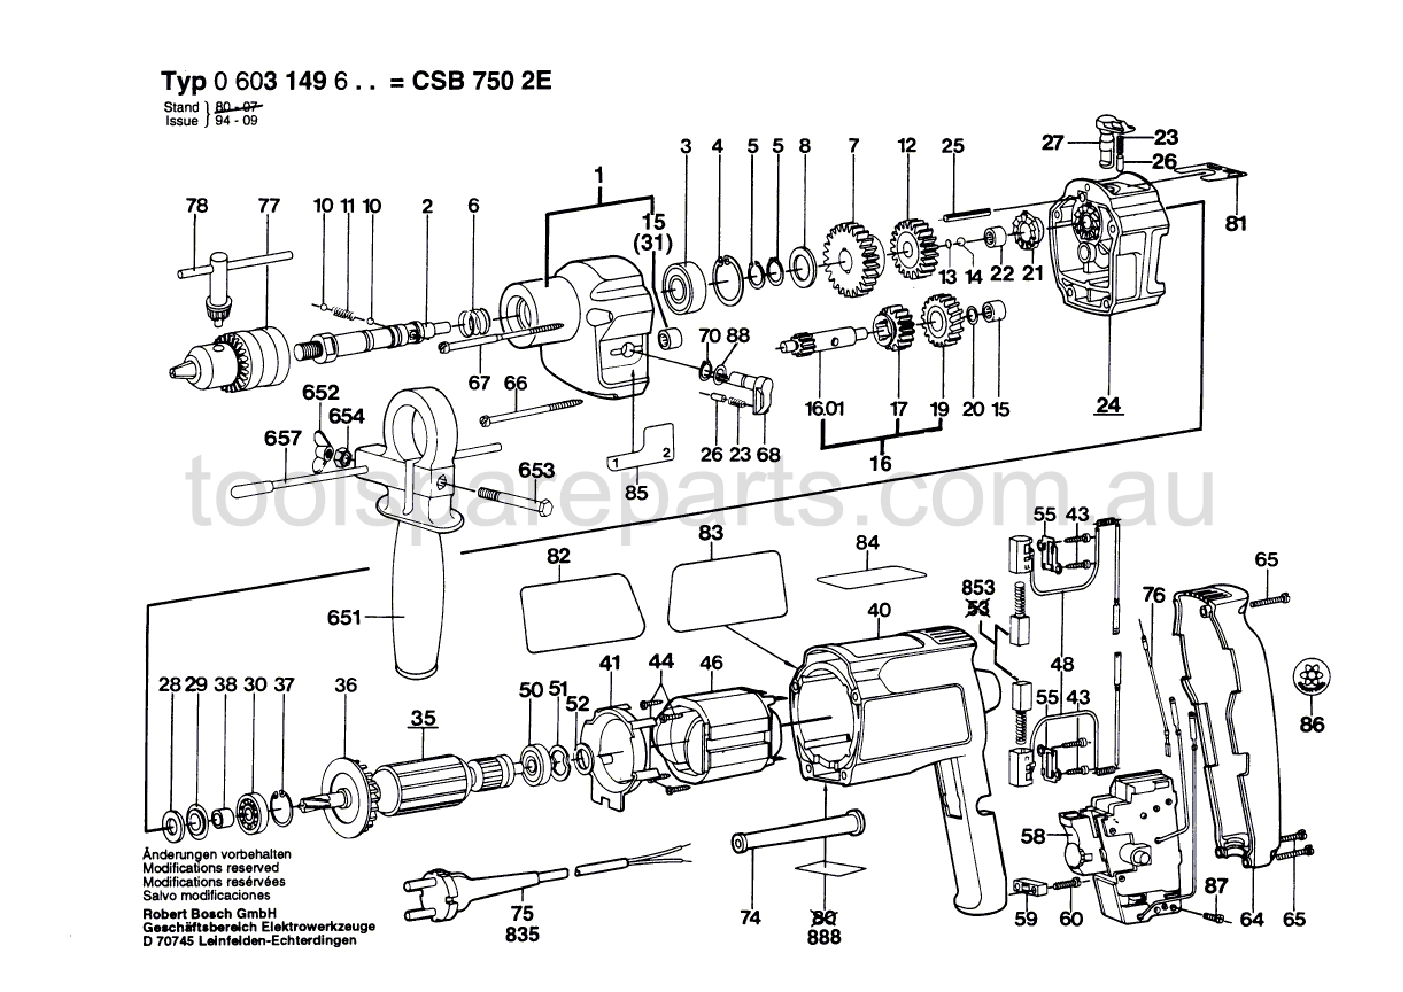 Bosch CSB 750-2 E 0603149637  Diagram 1